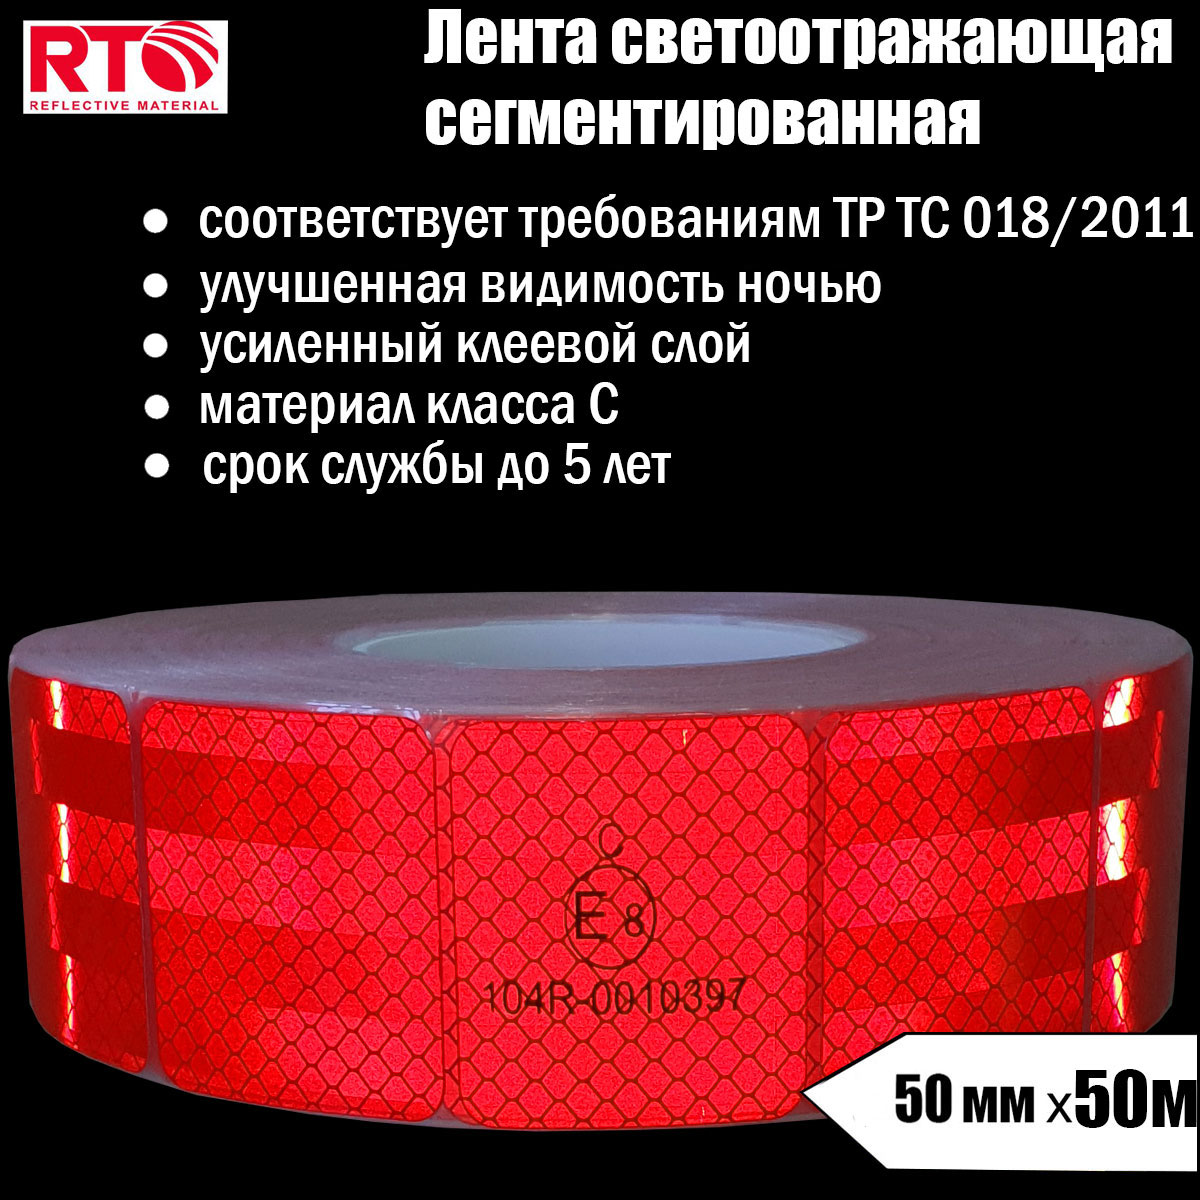 Лента светоотражающая сегментированная RTLITE RT-V104 для контурной маркировки, 50мм х 50м лента светоотражающая сегментированная rtlite rt v104 для контурной маркировки 50мм х 5м